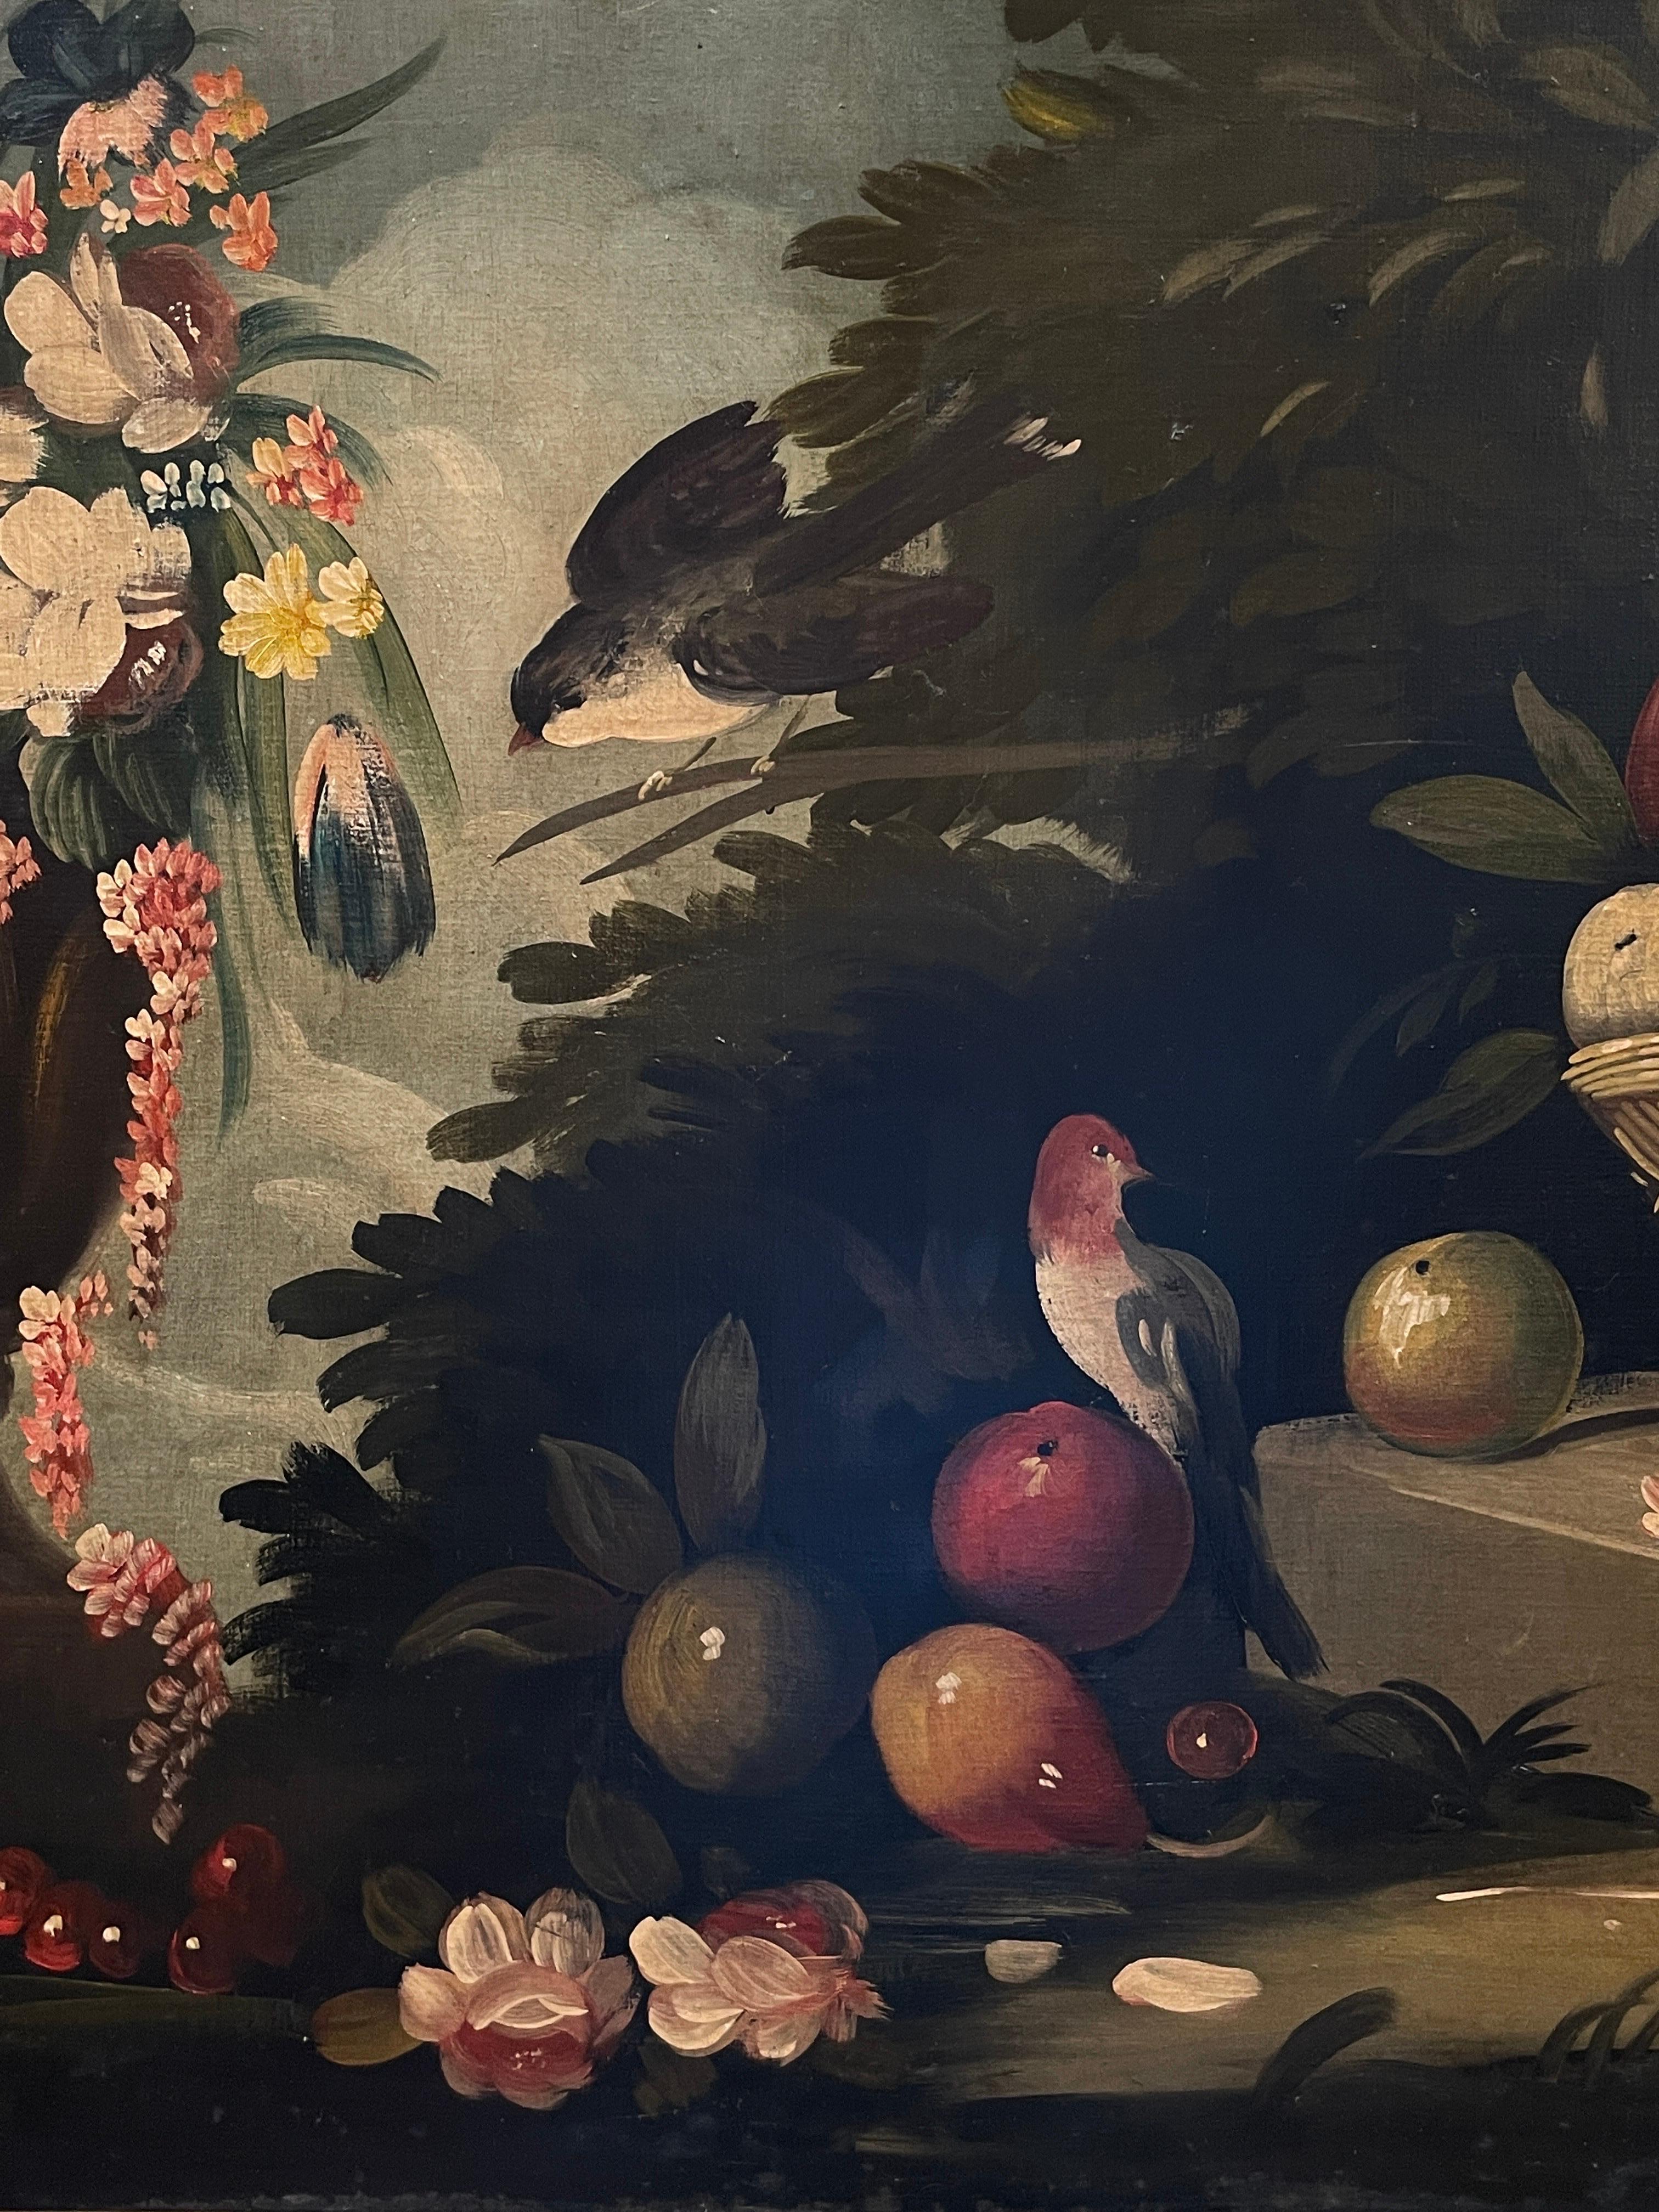 Großes italienisches klassisches Stillleben des 19. Jahrhunderts mit Ornamentvögeln, Obst und Blumen (Grau), Landscape Painting, von Italian 19th C